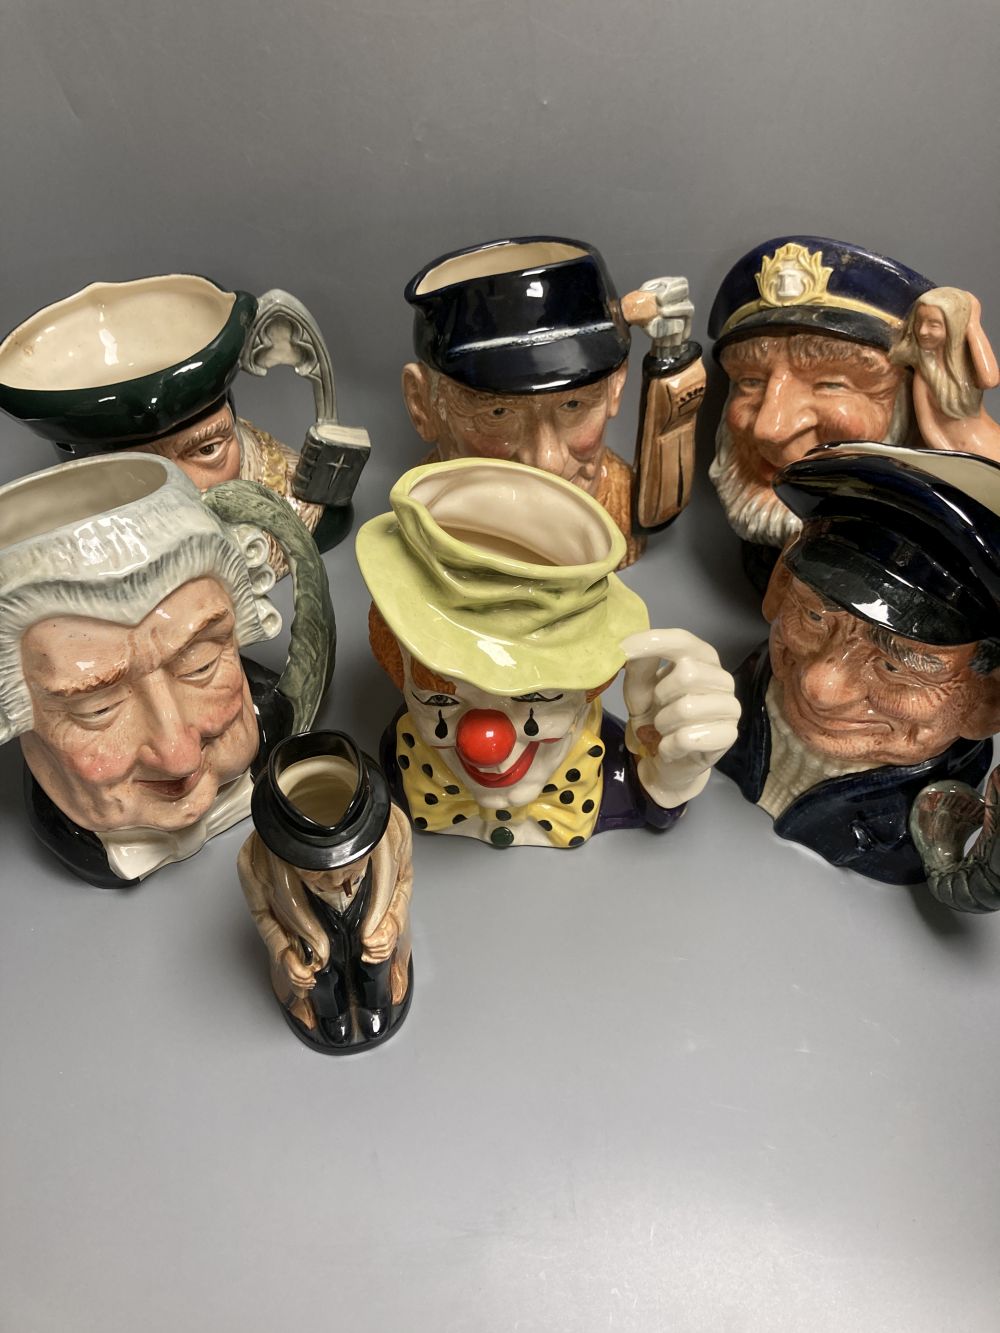 Five Royal Doulton character jugs, a Royal Doulton The Clown character jug and a smaller Winston Churchill character jug